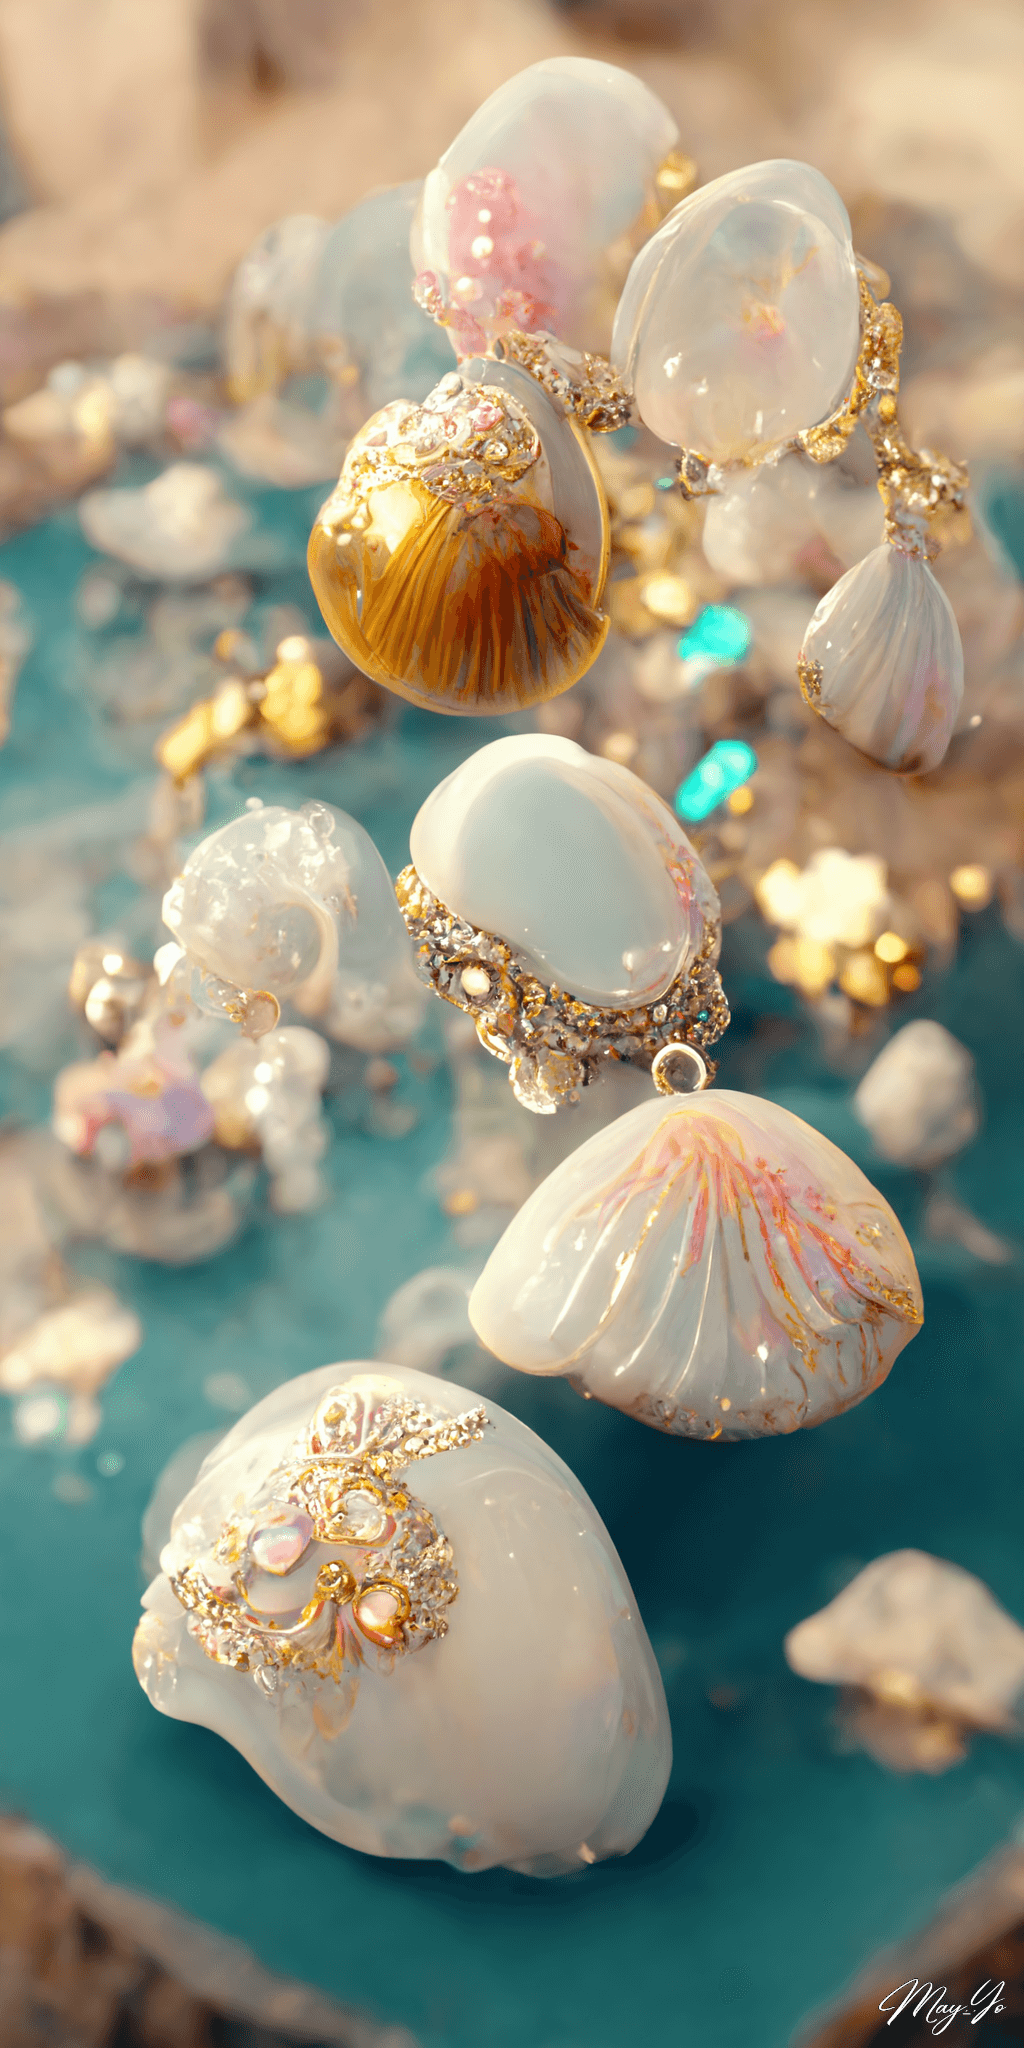 人魚をイメージしたマーメイド風ジュエリーのイラスト ブローチ エメラルドグリーン 輝く貝殻の宝石の壁紙 ゴールドをあしらったジュエリー イラスト AIイラスト待受 縦長画像 mermaid jewerly illustration gold and shell pearl luxery